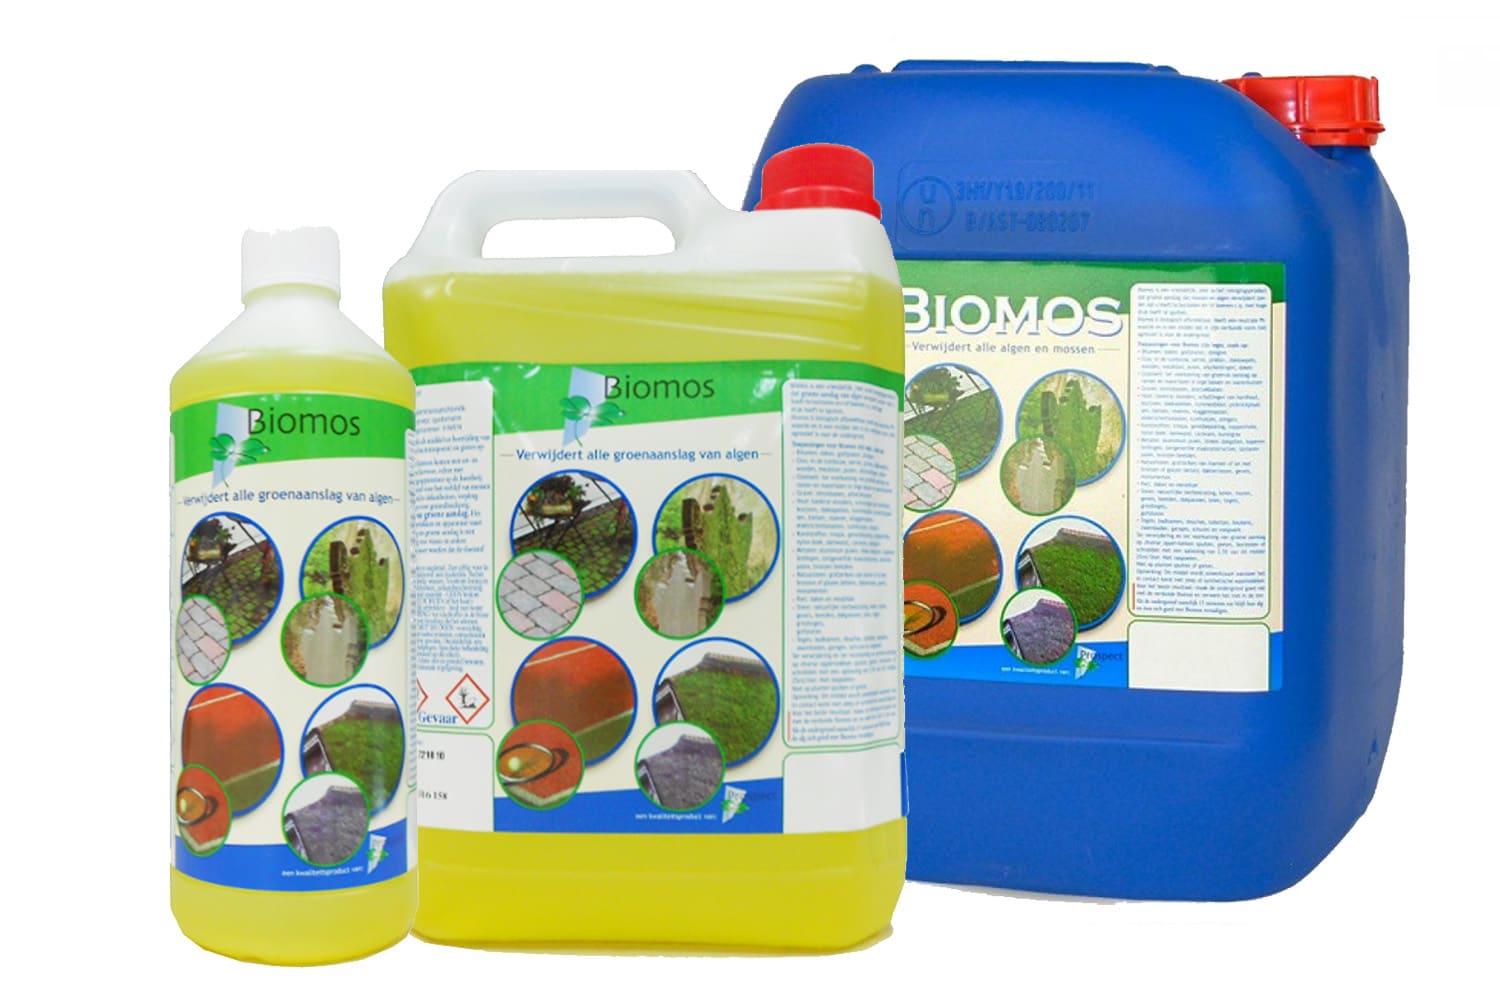 Biomos is een uiterst doeltreffend middel om op een vriendelijke manier groene aanslag van algen aan te pakken. Dit product is beschikt voor vrijwel iedere ondergrond en daardoor breed inzetbaar.